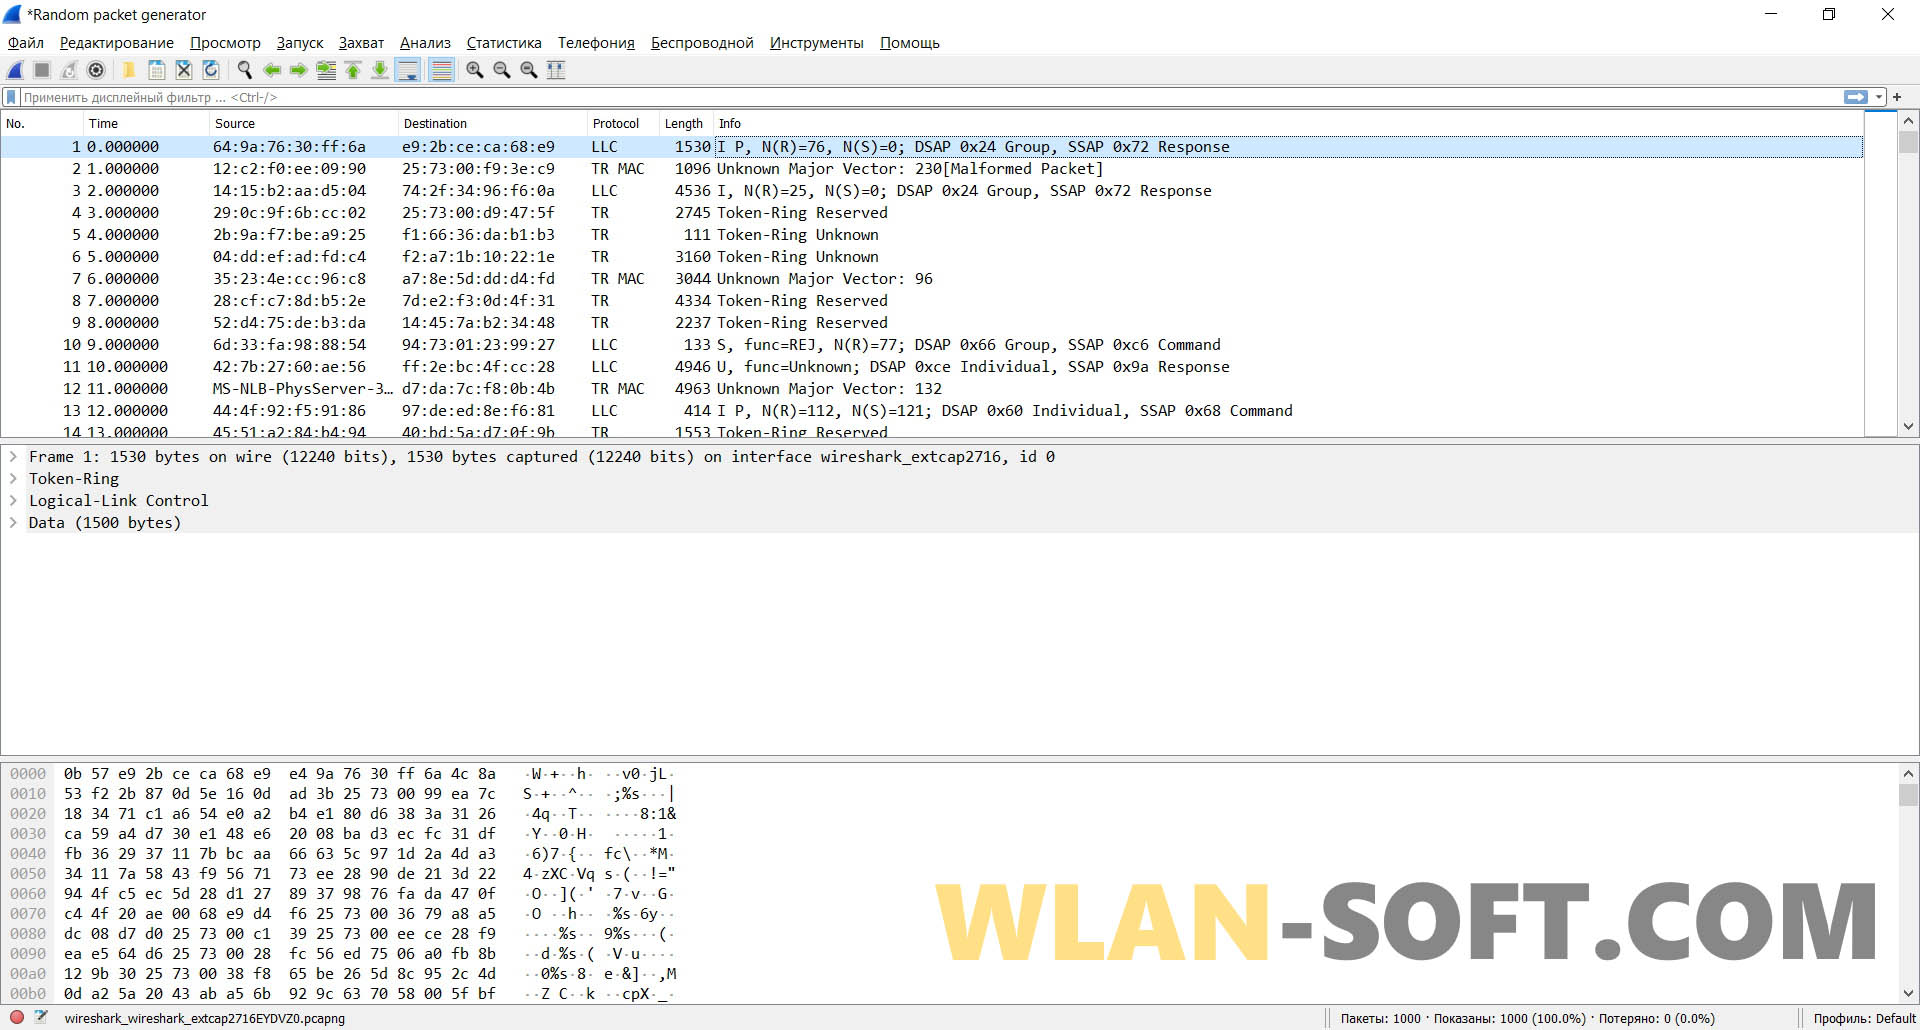 Wireshark 4.0.10 instaling